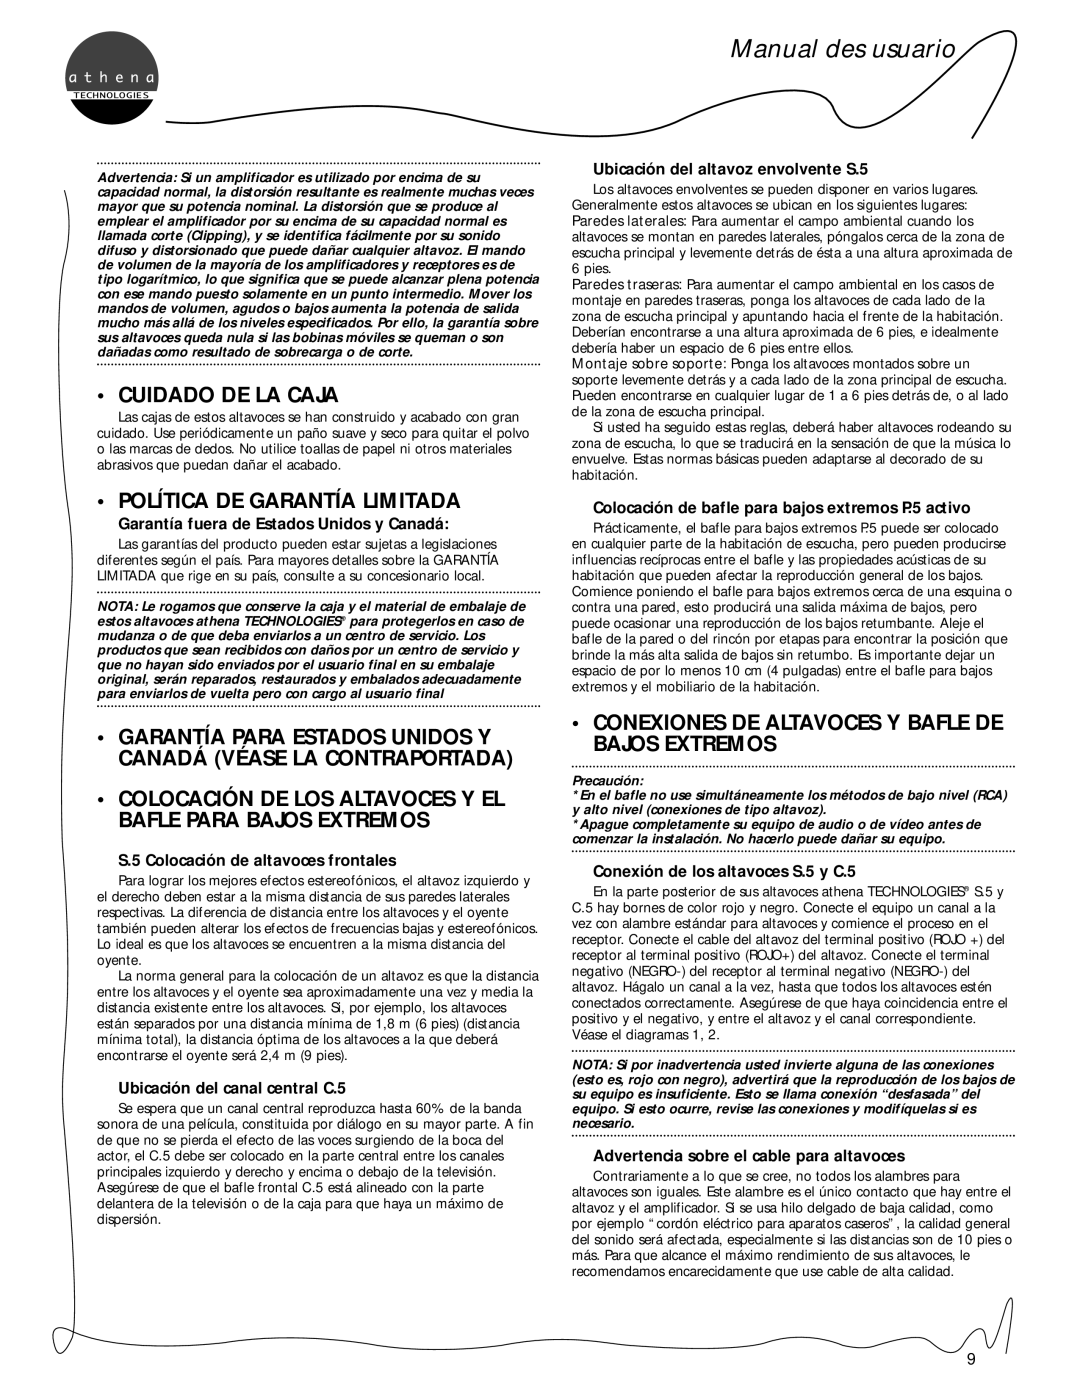 Athena Technologies S.5, C.5, P.5 owner manual Cuidado De La Caja, Política De Garantía Limitada, Manual des usuario 